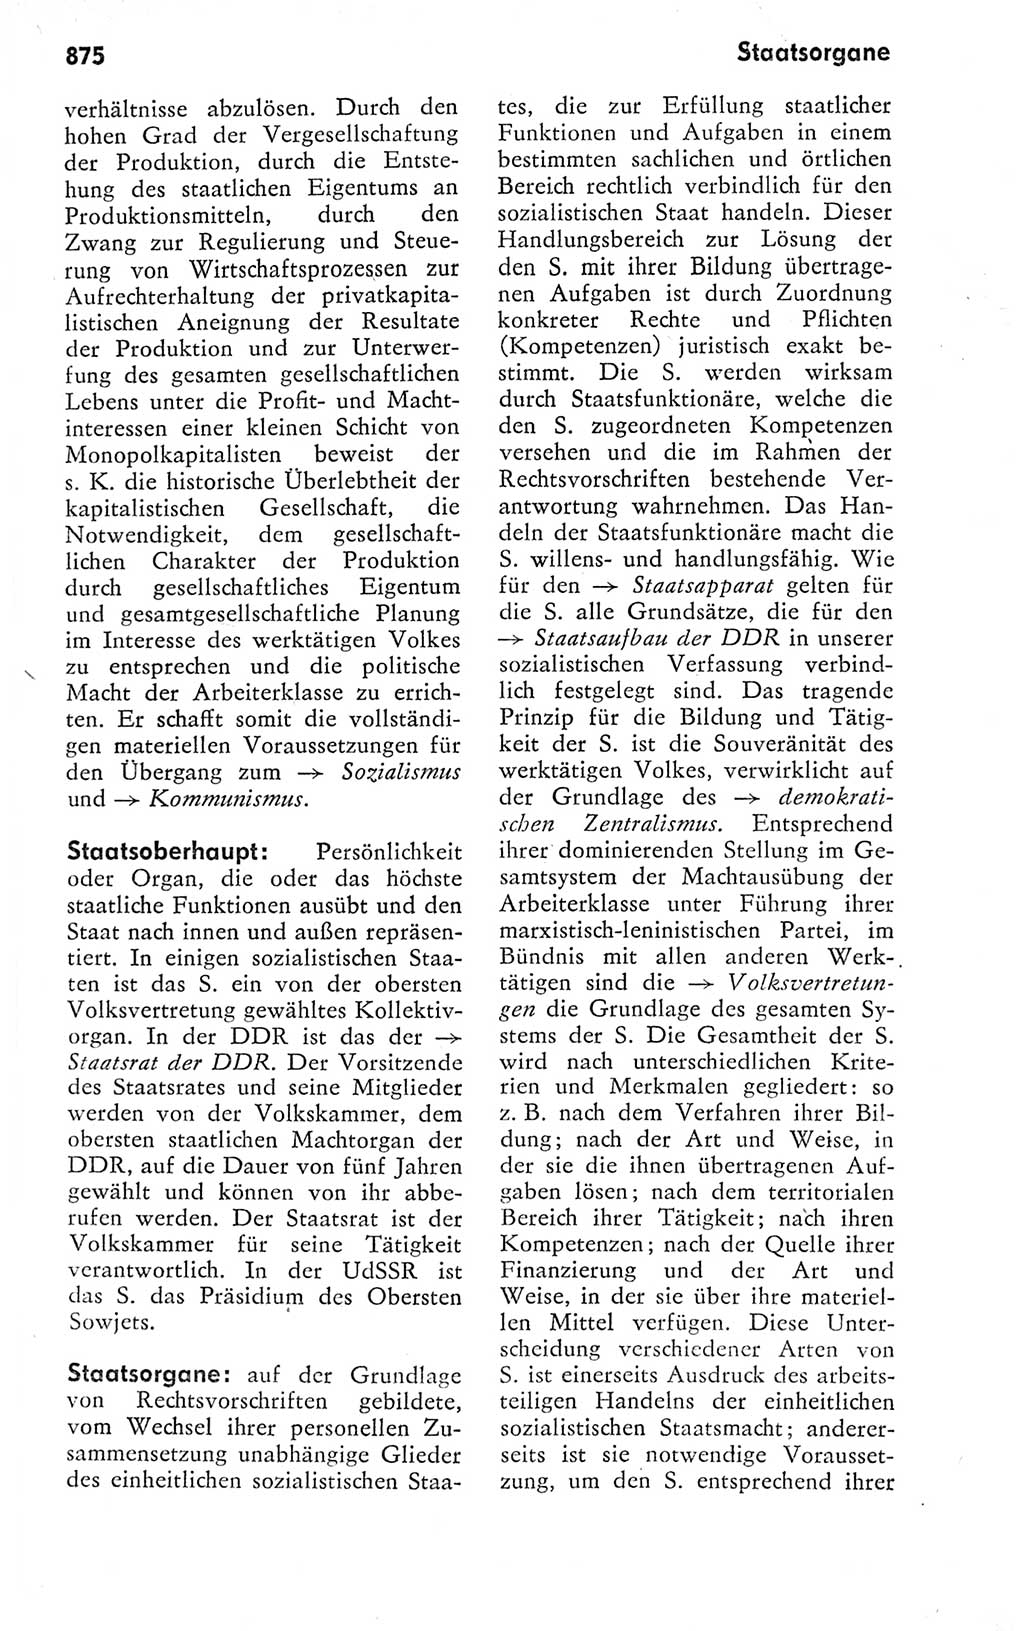 Kleines politisches Wörterbuch [Deutsche Demokratische Republik (DDR)] 1978, Seite 875 (Kl. pol. Wb. DDR 1978, S. 875)